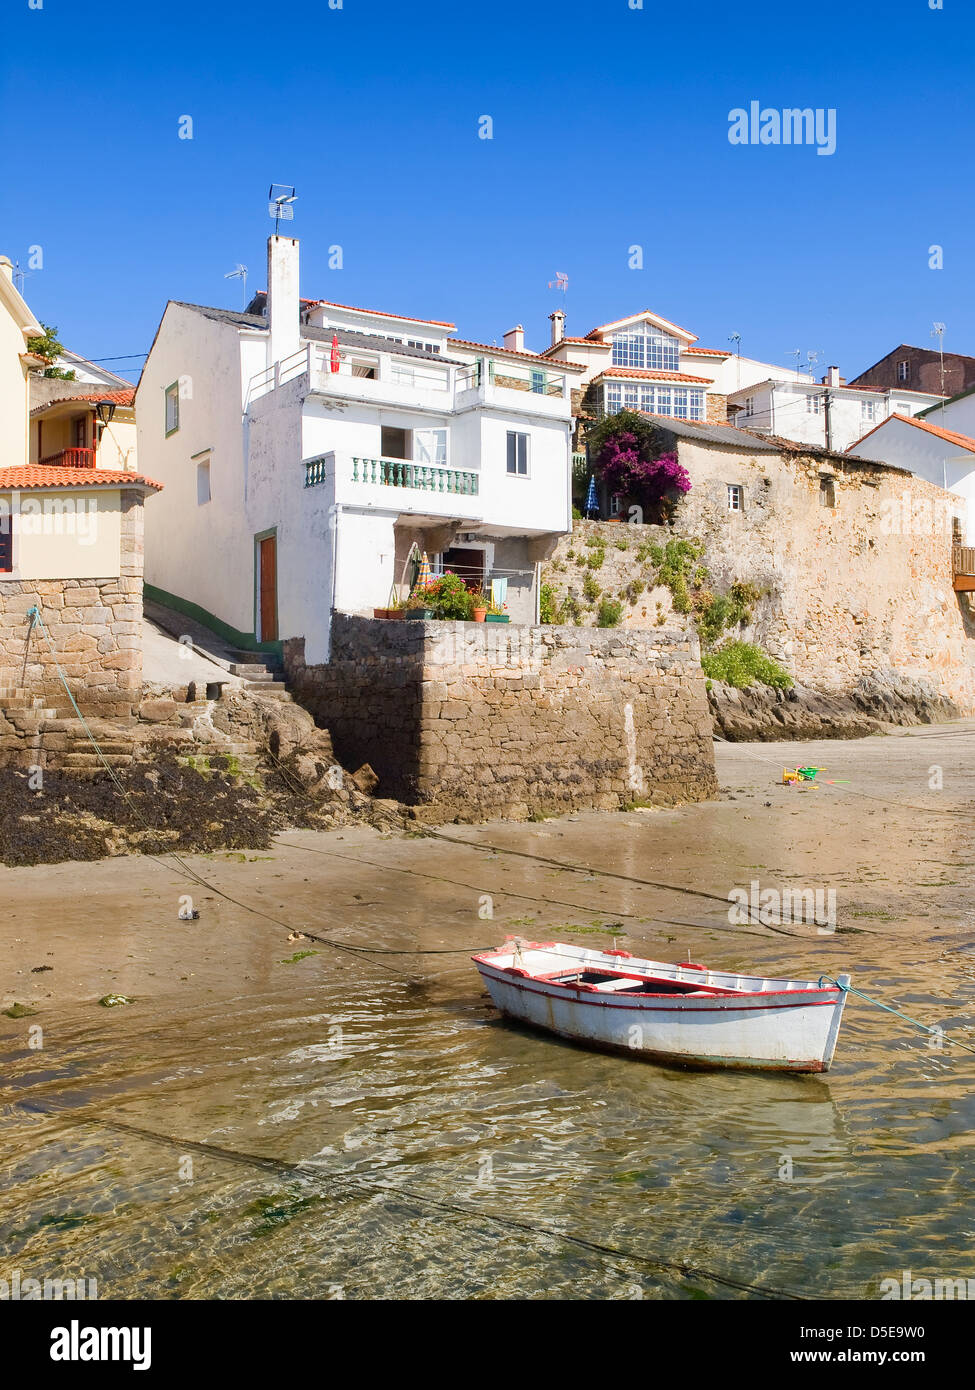 Casas en la orilla del mar con un barco en primer plano. La foto es tomada  en un pueblo de pescadores llamado 